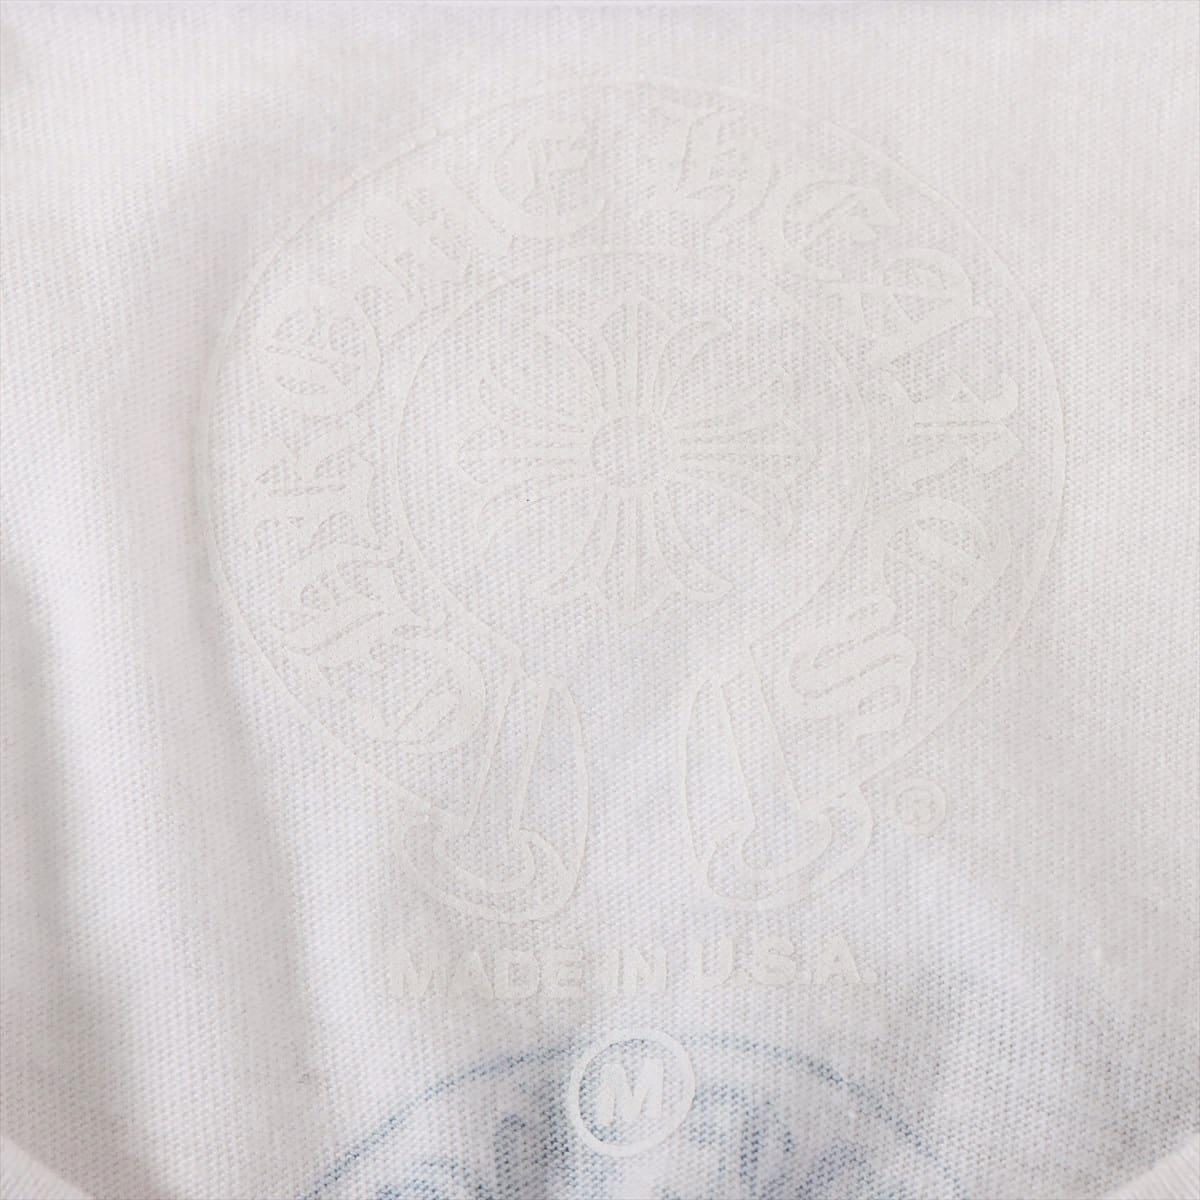 クロムハーツ Tシャツ コットン マルチカラーホースシュープリント ホワイト サイズM